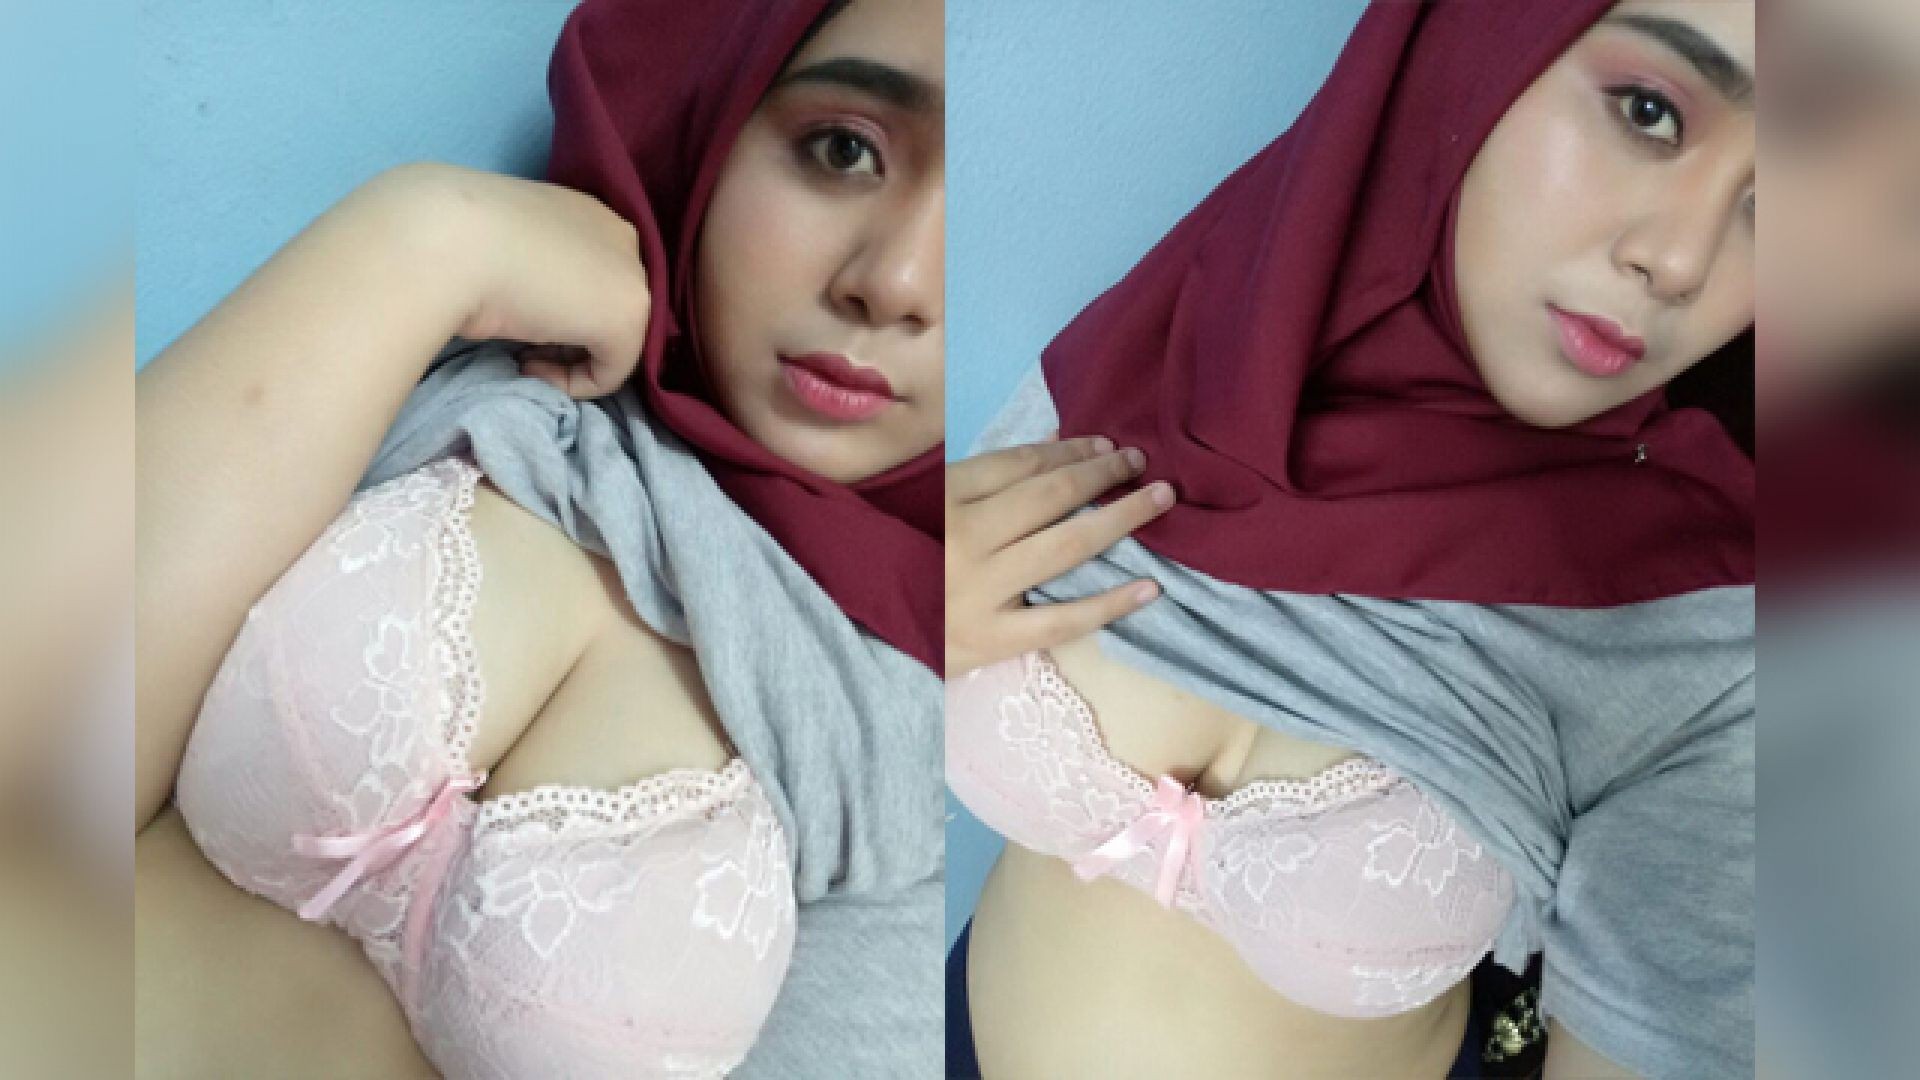 Today Exclusive- Hot Muslim Girl Boobs Selfie Part1